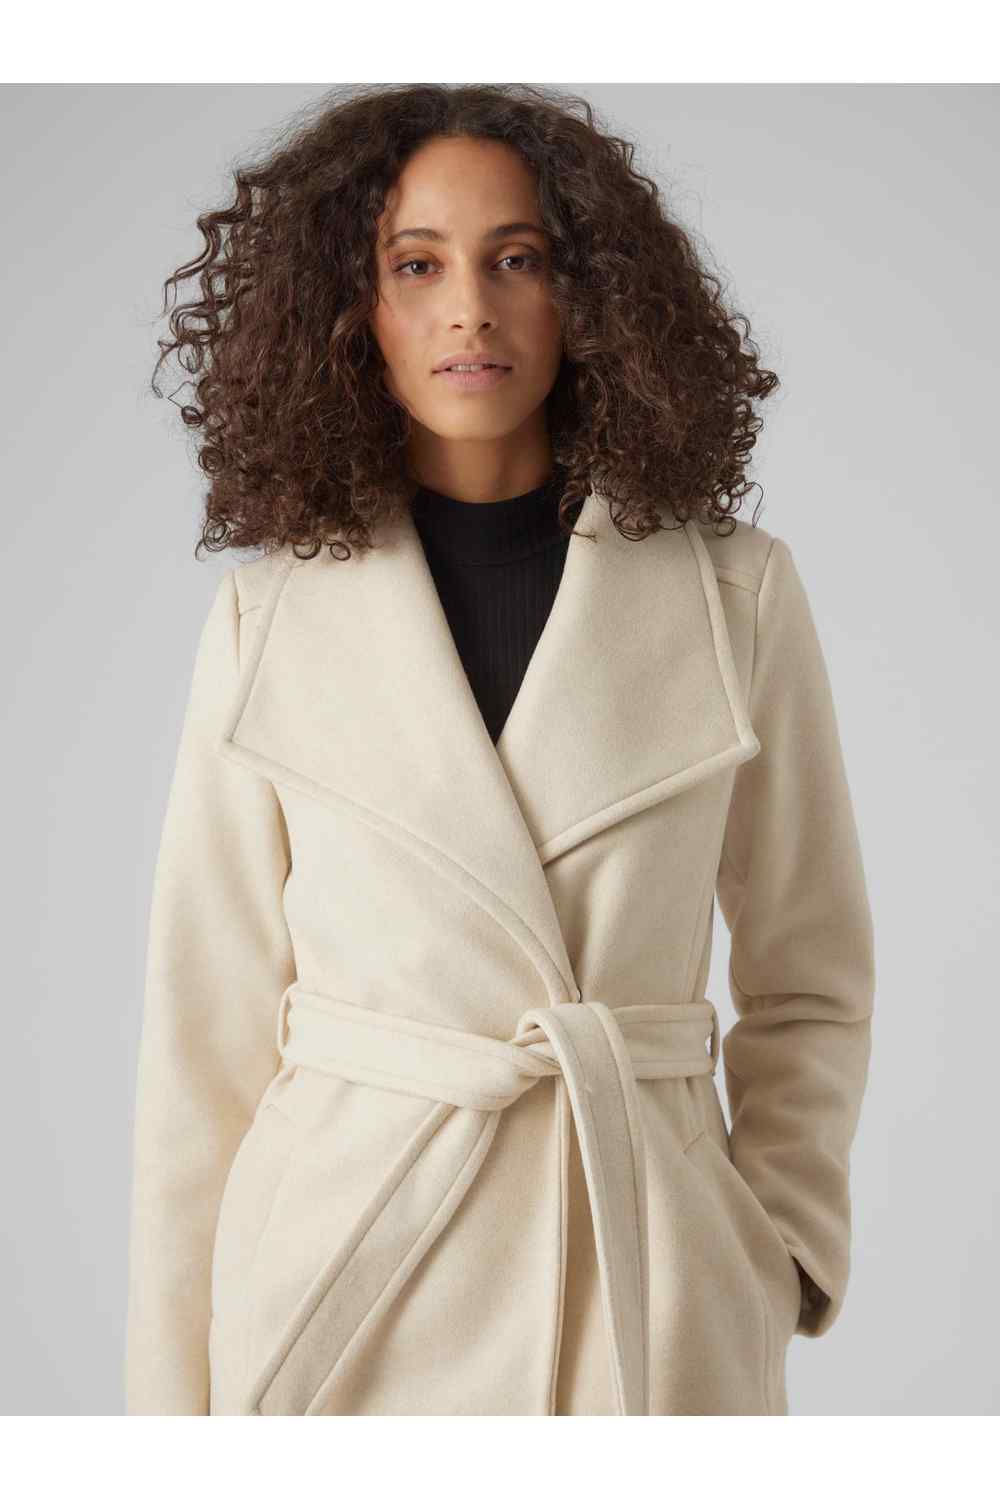 Vero Moda Paula Wrap Coat 2 Shaws Department Stores